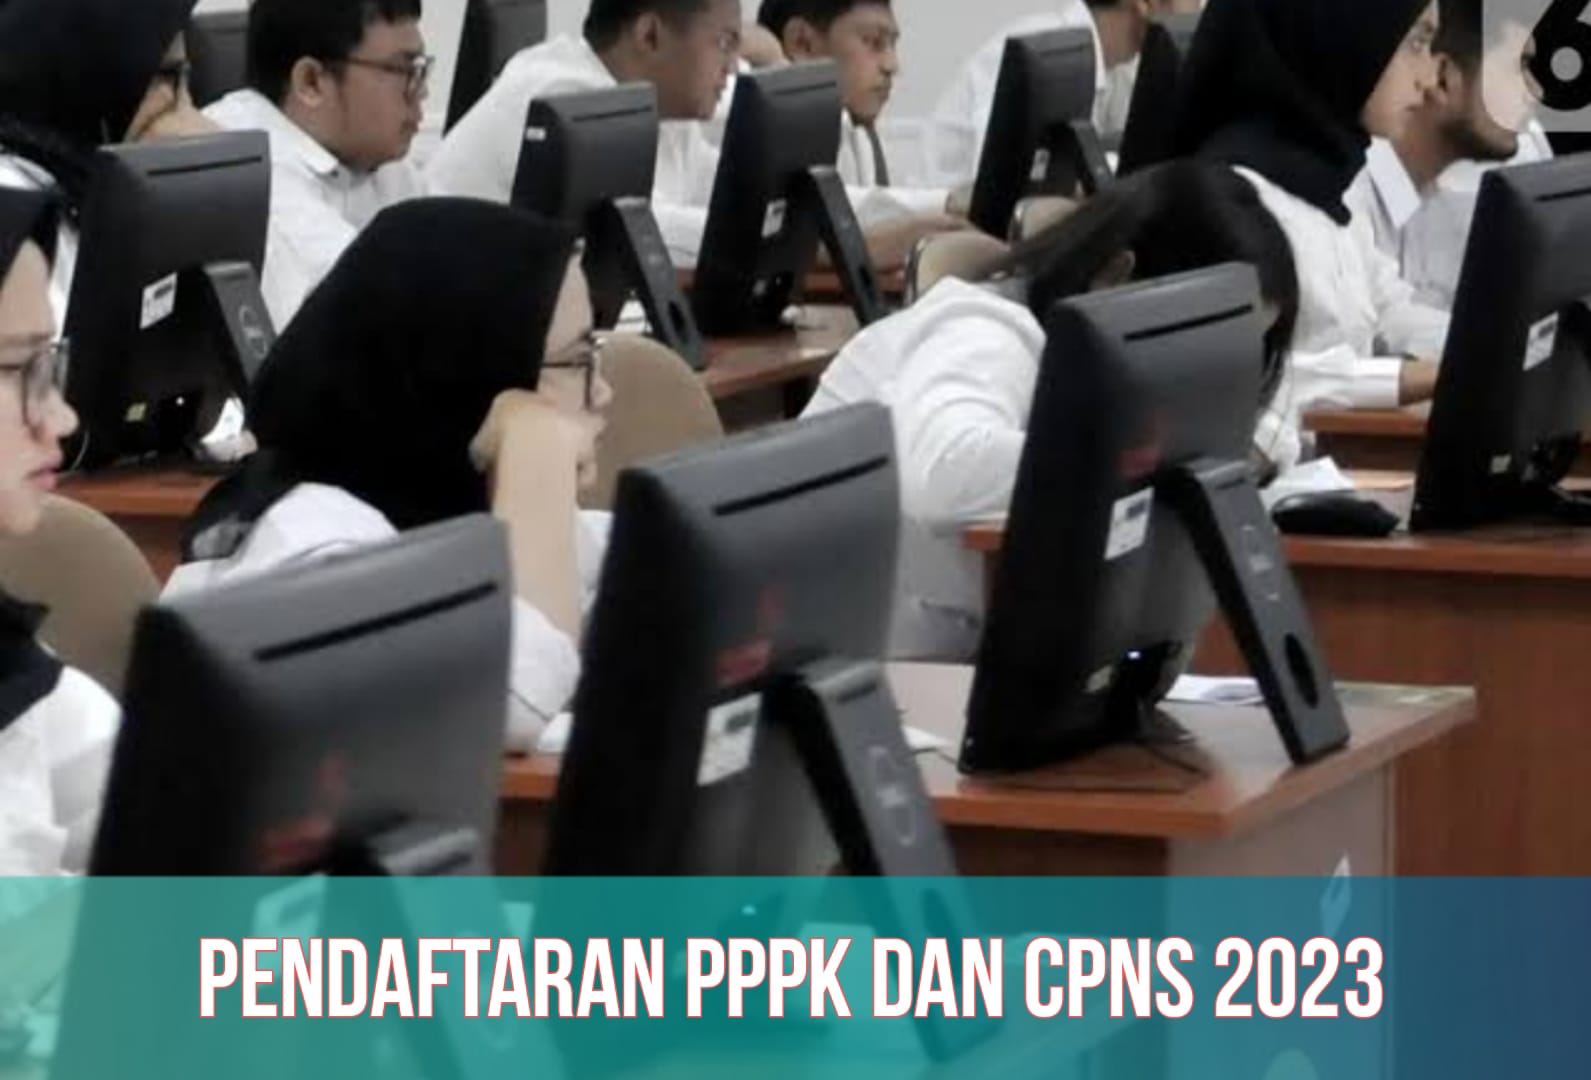 PPPK dan CPNS 2023 Segera Dibuka, Segini Jumlah Formasi, Cara Daftar, dan Link Pendaftaran